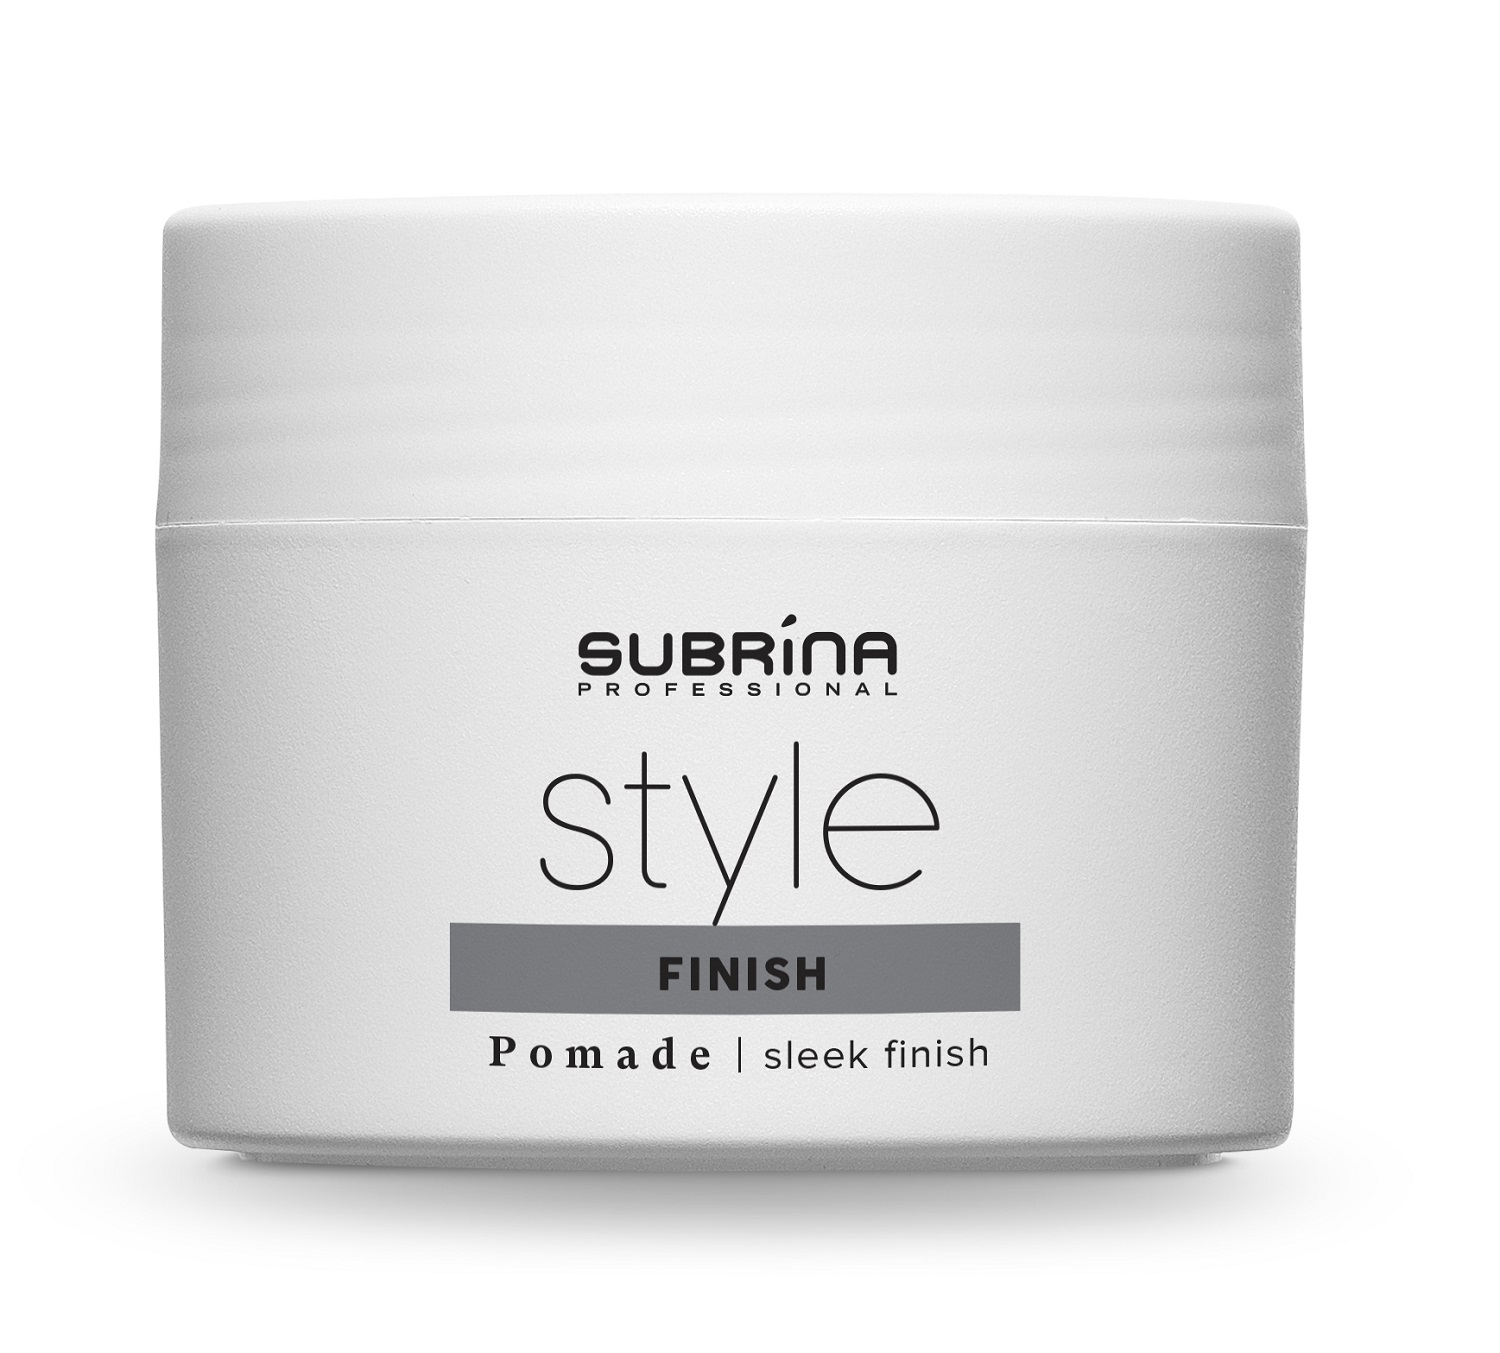 Subrina Professional Помада для волос Pomade, 100 мл (Subrina Professional, Styling) цена и фото